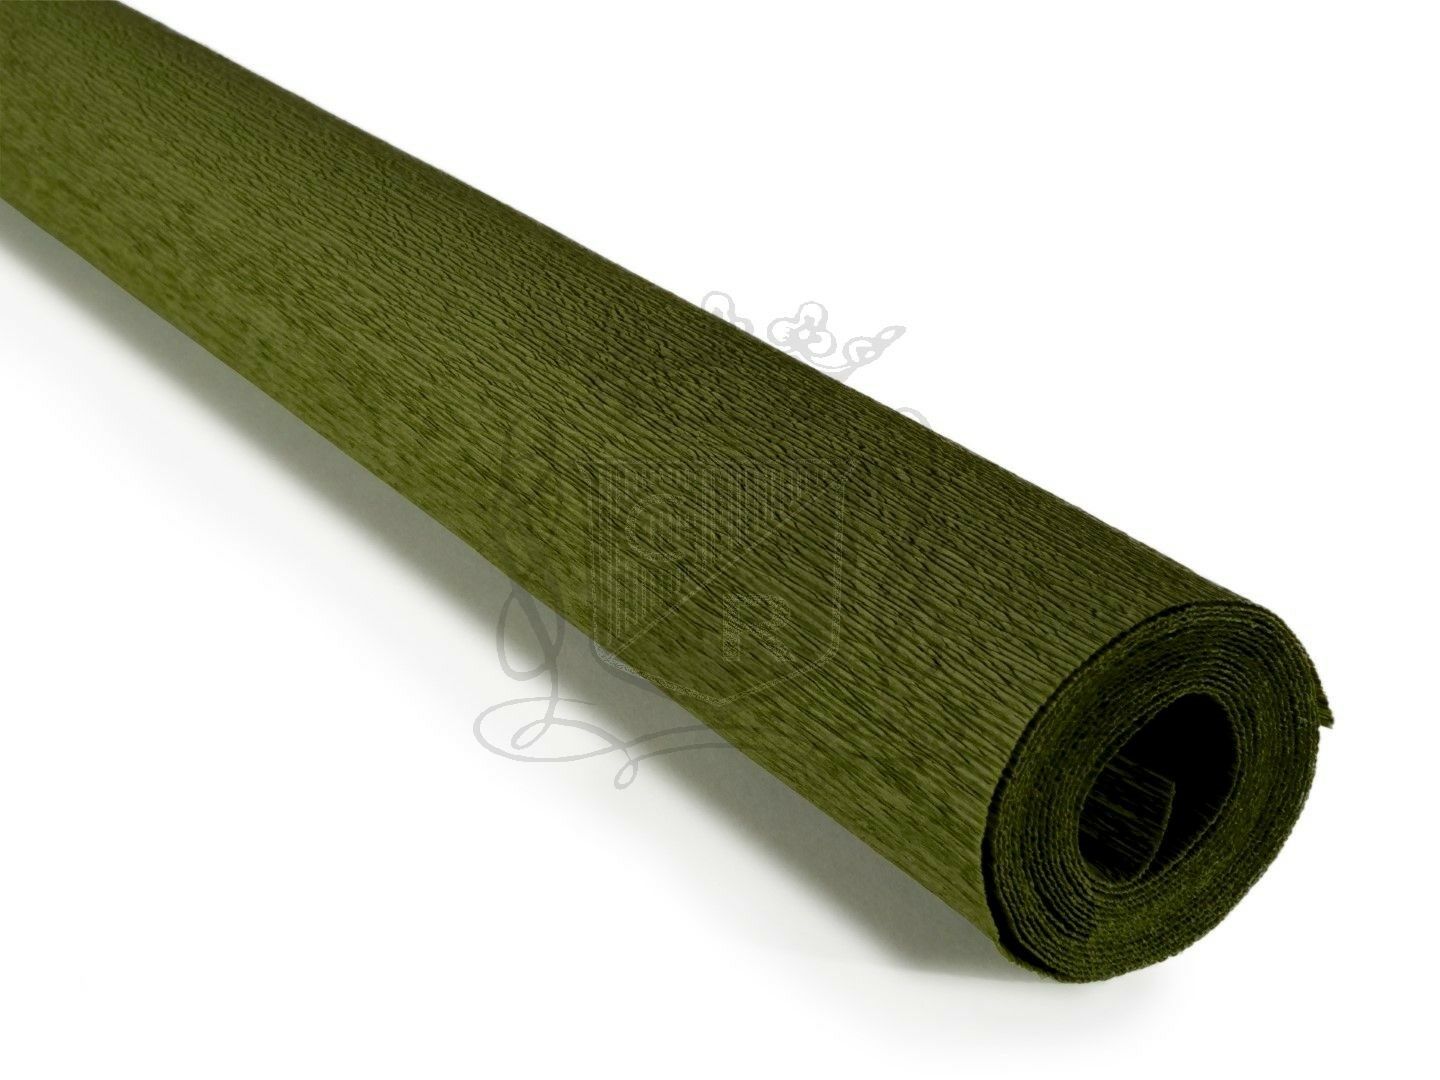 İtalyan Krapon Kağıdı No:368 Olive Green By Turner 90 gr. 50*150 cm